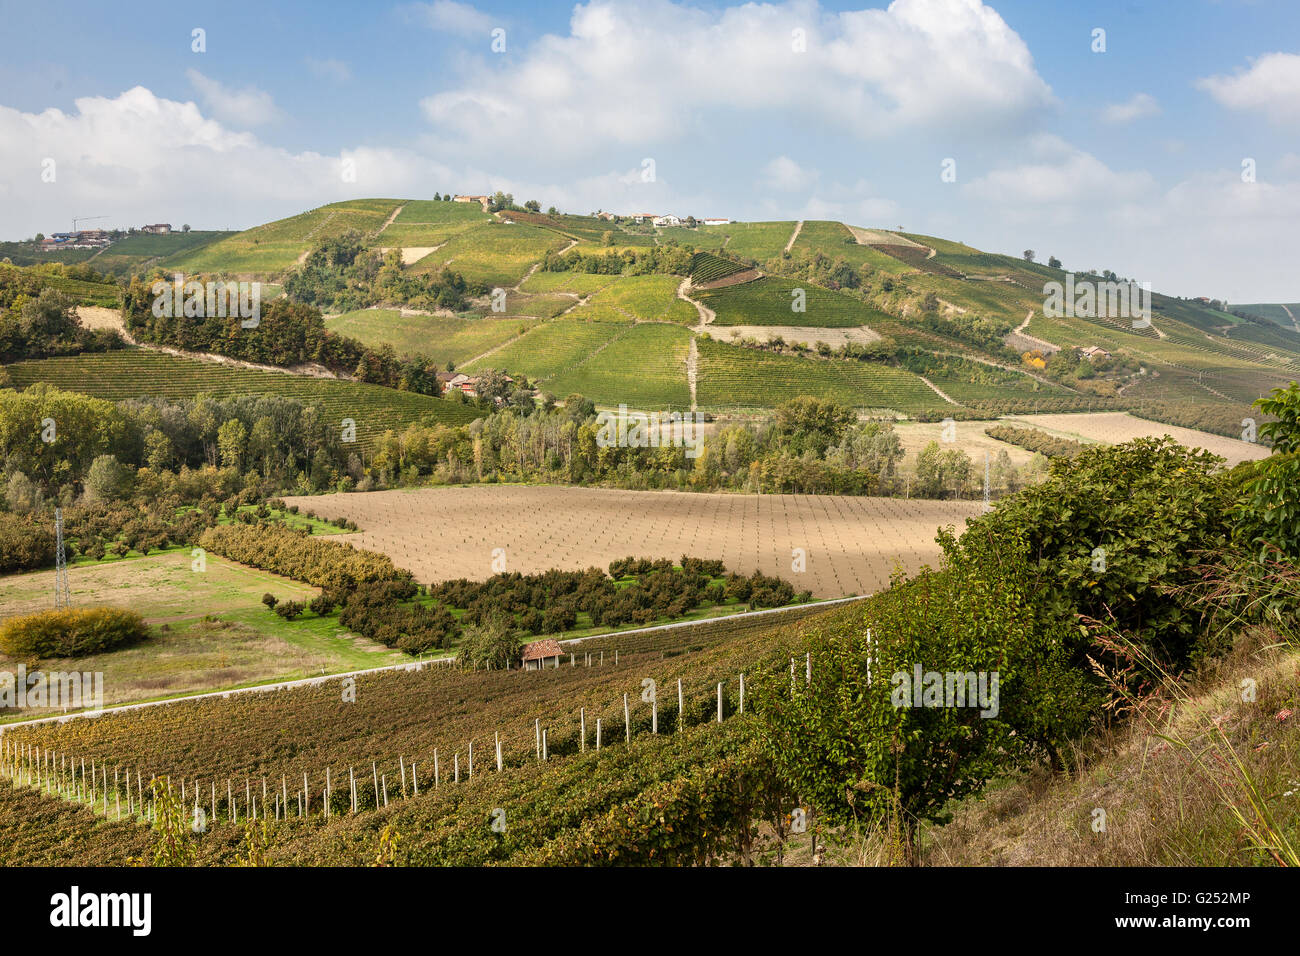 Terreni agricoli e vigneti nei pressi di Diano d'alba nella regione Piemonte del nord ovest Italia. Foto Stock